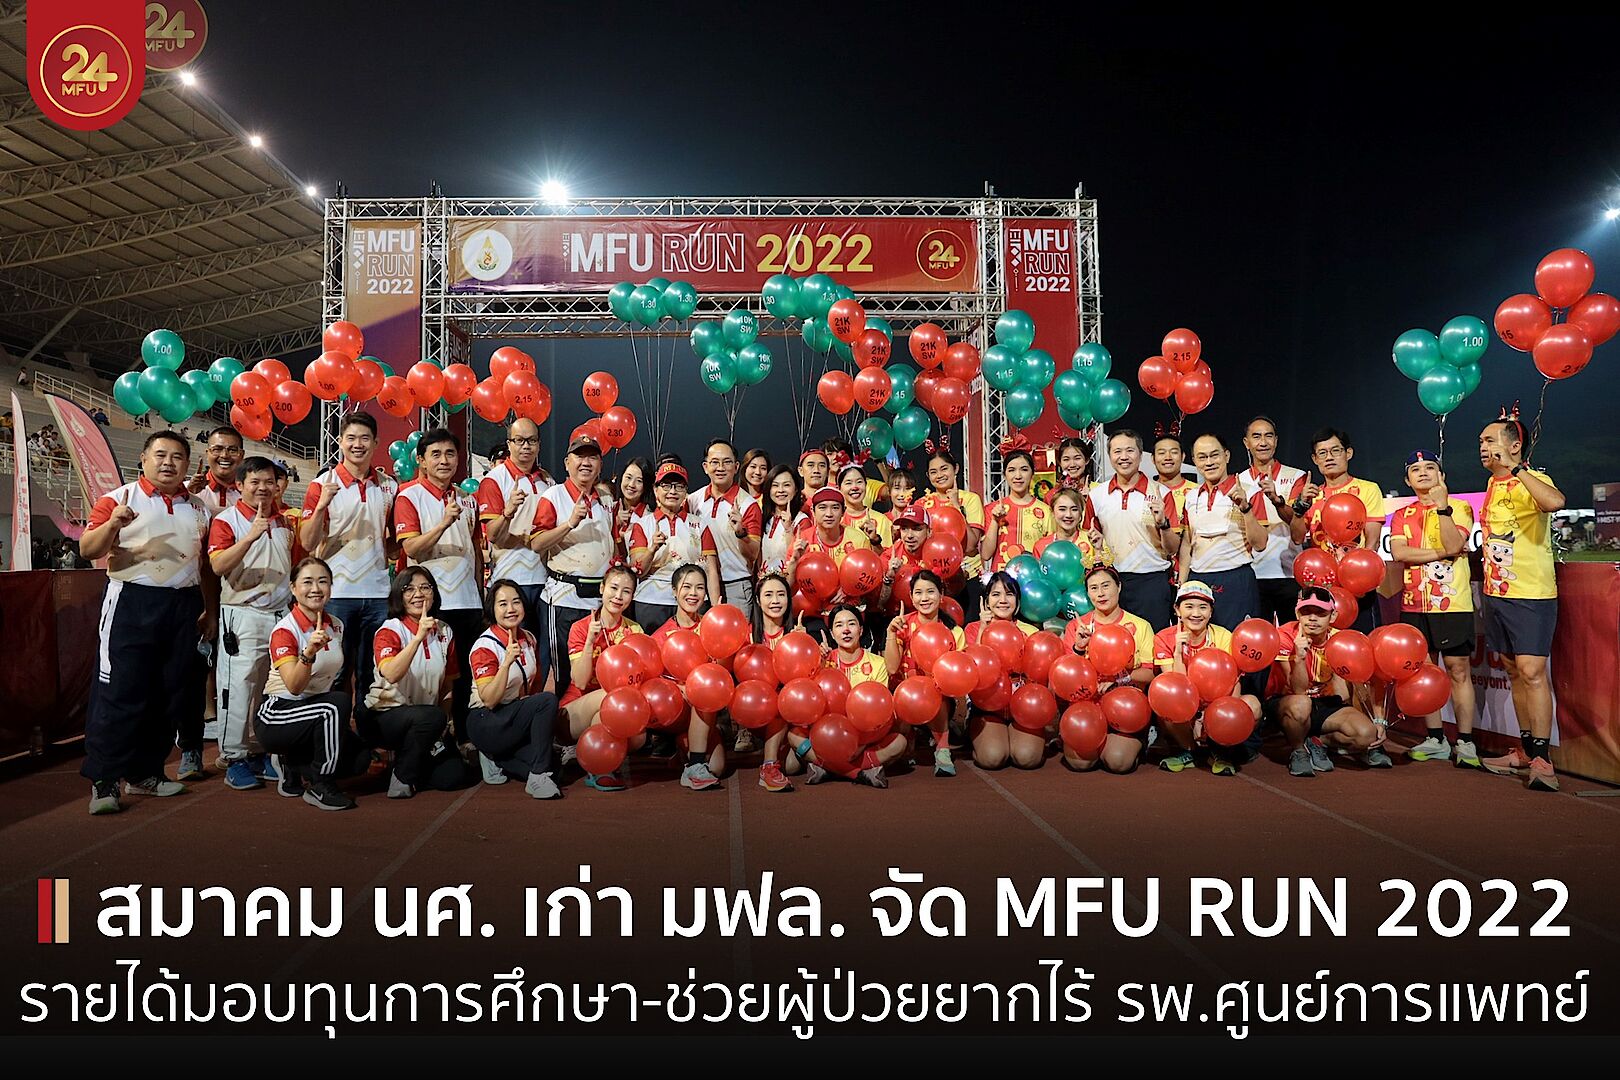 สมาคมนักศึกษาเก่า มฟล. จัด MFU RUN 2022 งานวิ่งในมหาวิทยาลัยในสวน รายได้สมทบทุนการศึกษาและโรงพยาบาลศูนย์การแพทย์ มฟล.